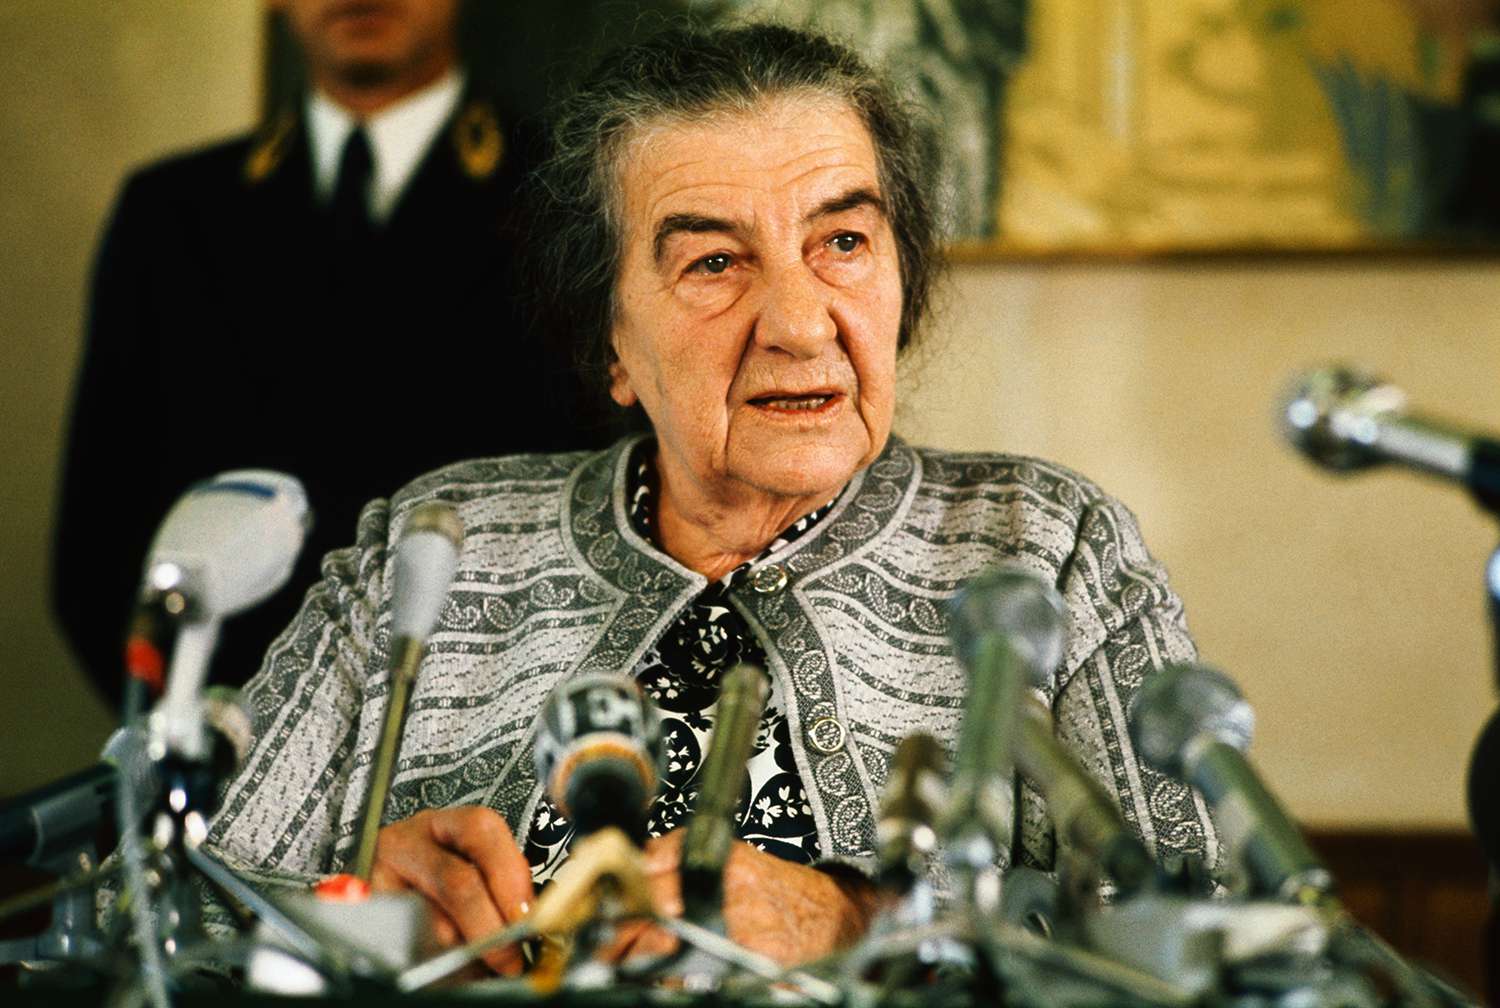 Ingyen nézheted meg a Golda Meirről szóló filmet a Bálint Házban